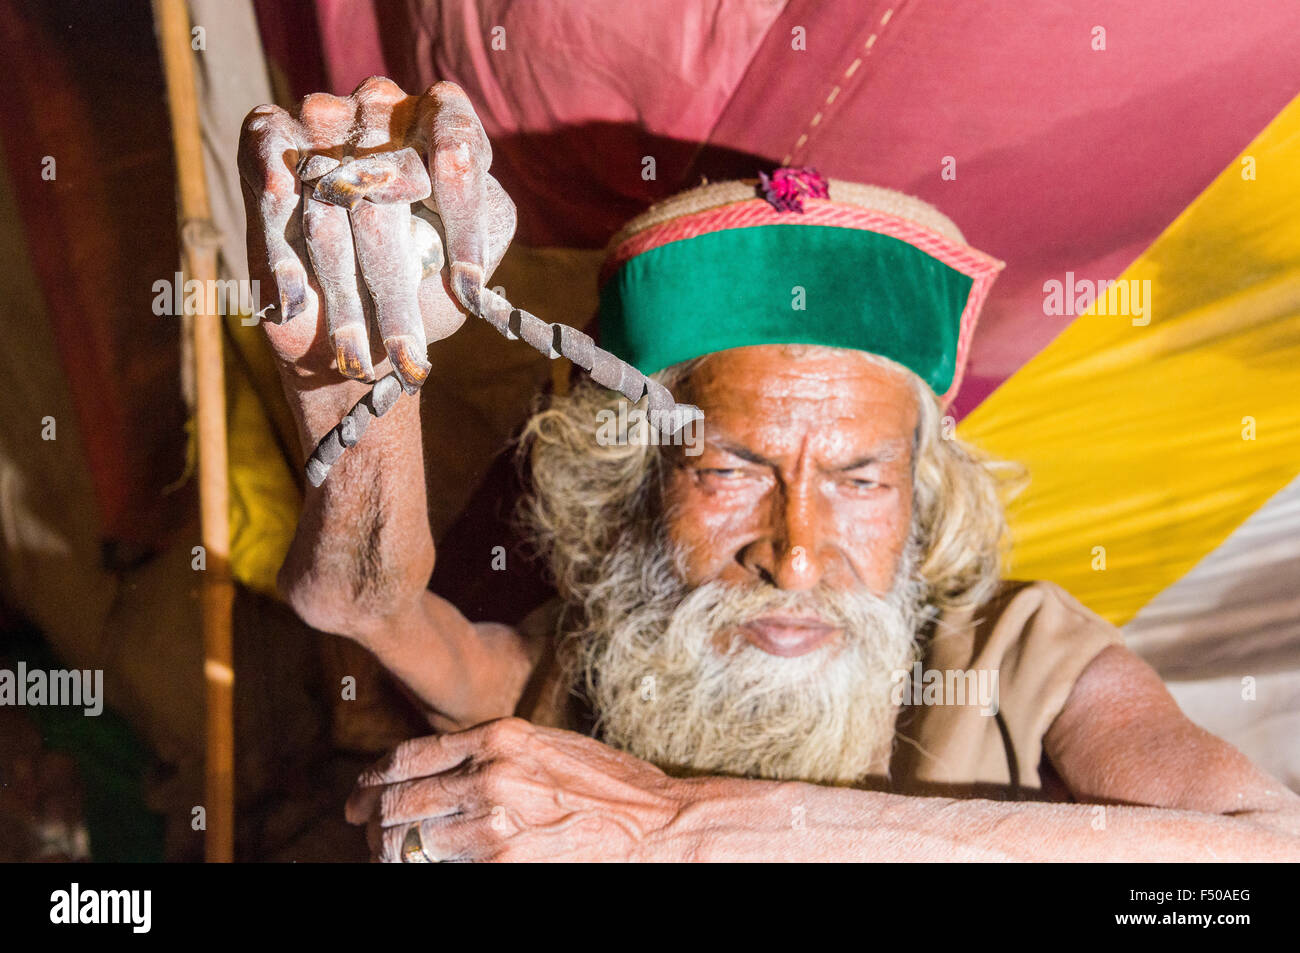 Juna akhara shiva de sadhu, saint homme, la pratique de urdha tapa, bras de levage ohne depuis de nombreuses années pour raison spirituelle dans sa tente. Banque D'Images